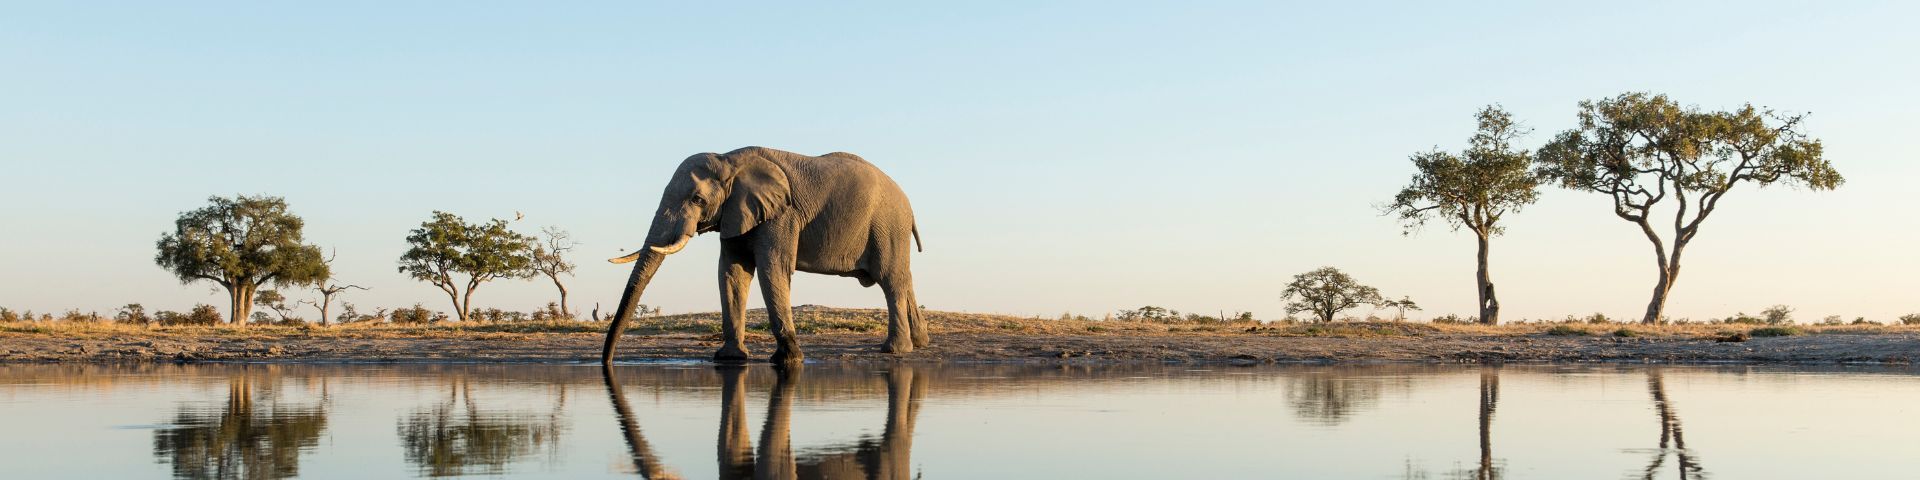 Elefant bei einer Afrika Reise mit sz-Reisen